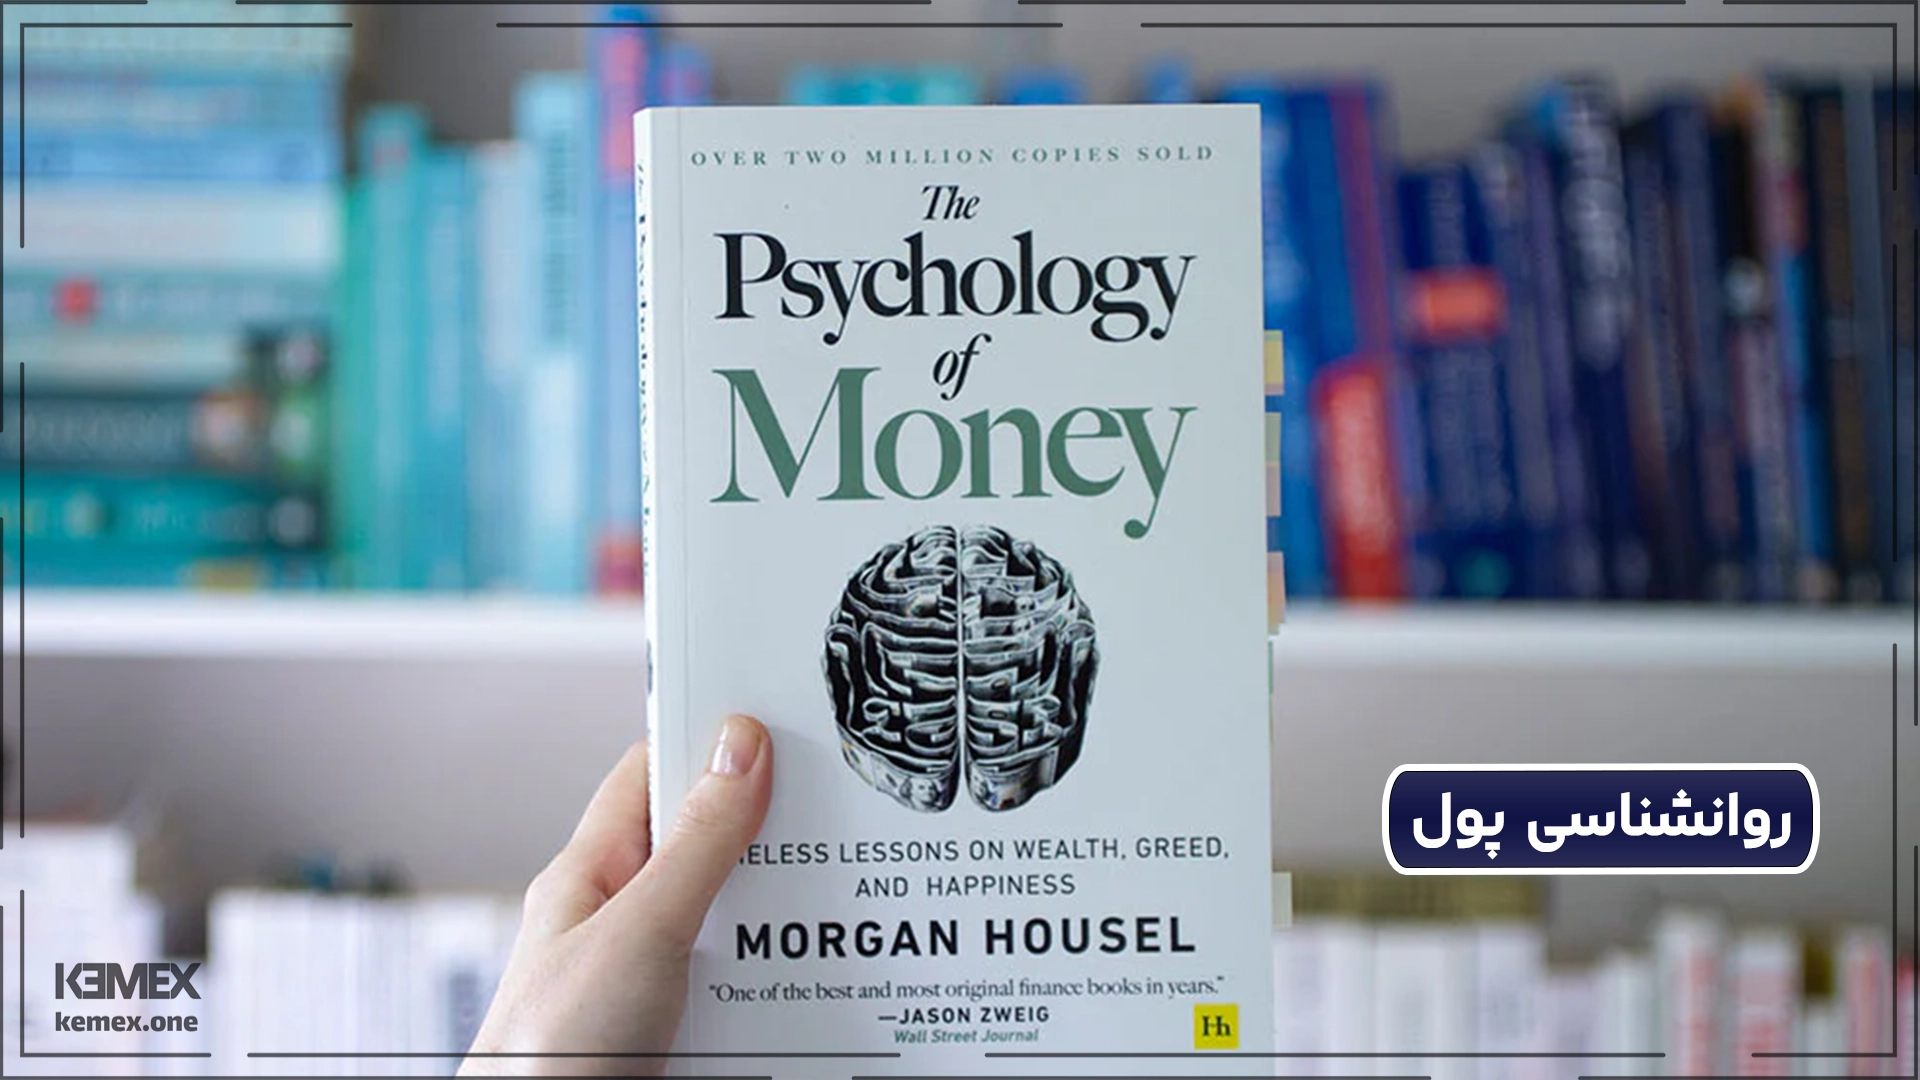  روانشناسی پول از بهترین کتاب های ثروت و موفقیت